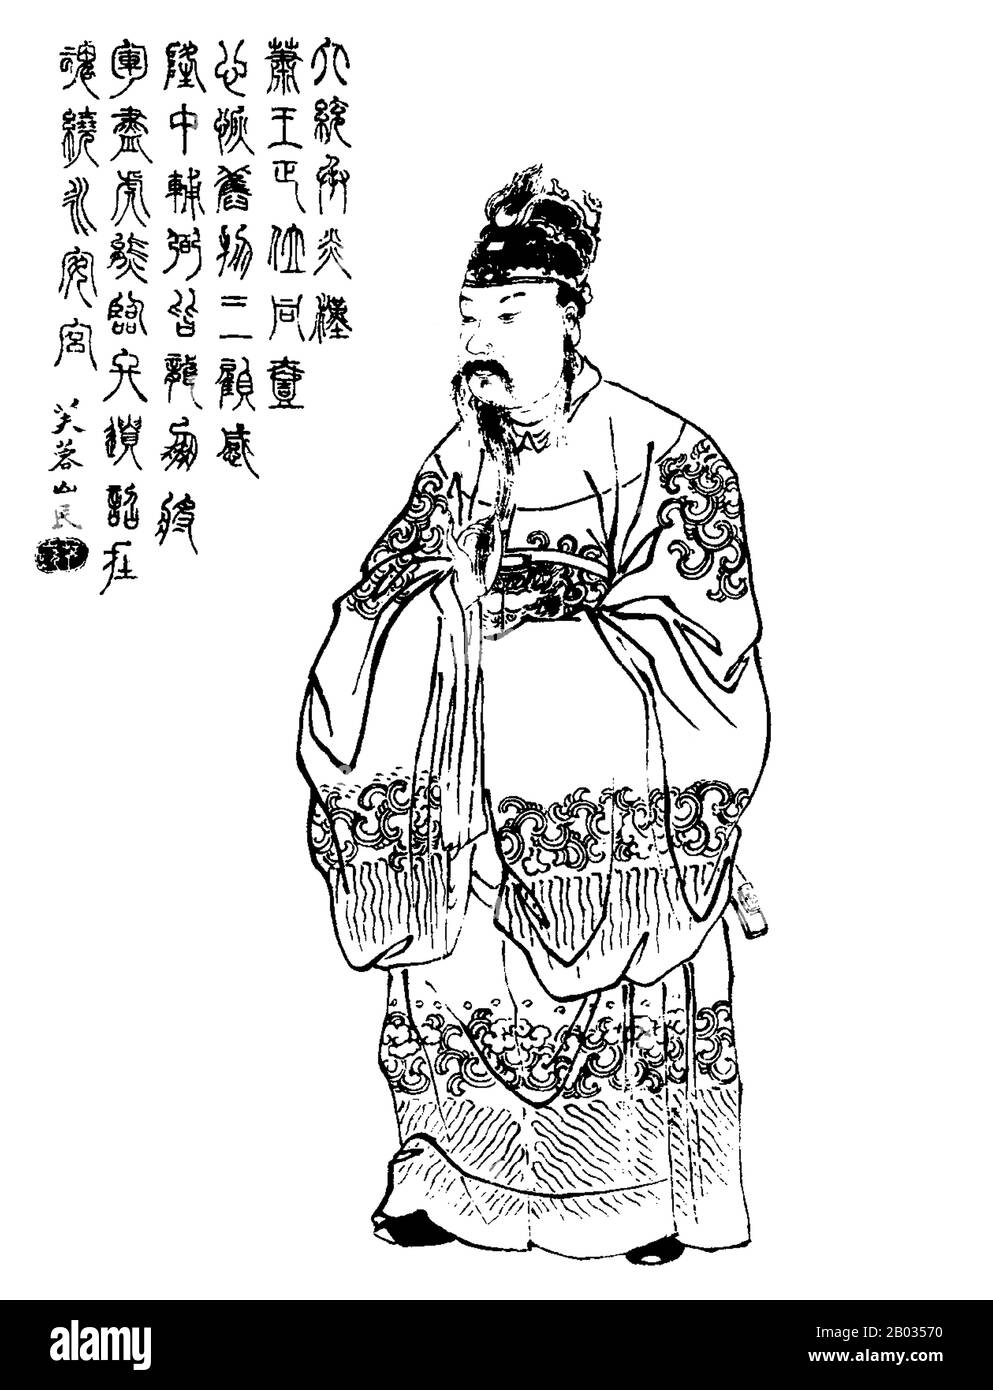 Liu bei (161 - 21. Juni 223 CE) war ein Kriegsherr, Militärgeneral und später als Kaiser Zhaolie der Gründer des Staates Shu Han während der Zeit Der Drei Reiche der chinesischen Geschichte. Obwohl Liu einen späteren Start als seine Rivalen hatte und sowohl die materiellen Ressourcen als auch den sozialen Status, den sie geboten hatten, fehlte, überwand er seine vielen Niederlagen, um sein eigenes Reich zu schnitzen, das auf seinem Höhepunkt die heutigen Sichuan, Guizhou, Hunan, einen Teil von Hubei und einen Teil von Gansu umfasste. Stockfoto